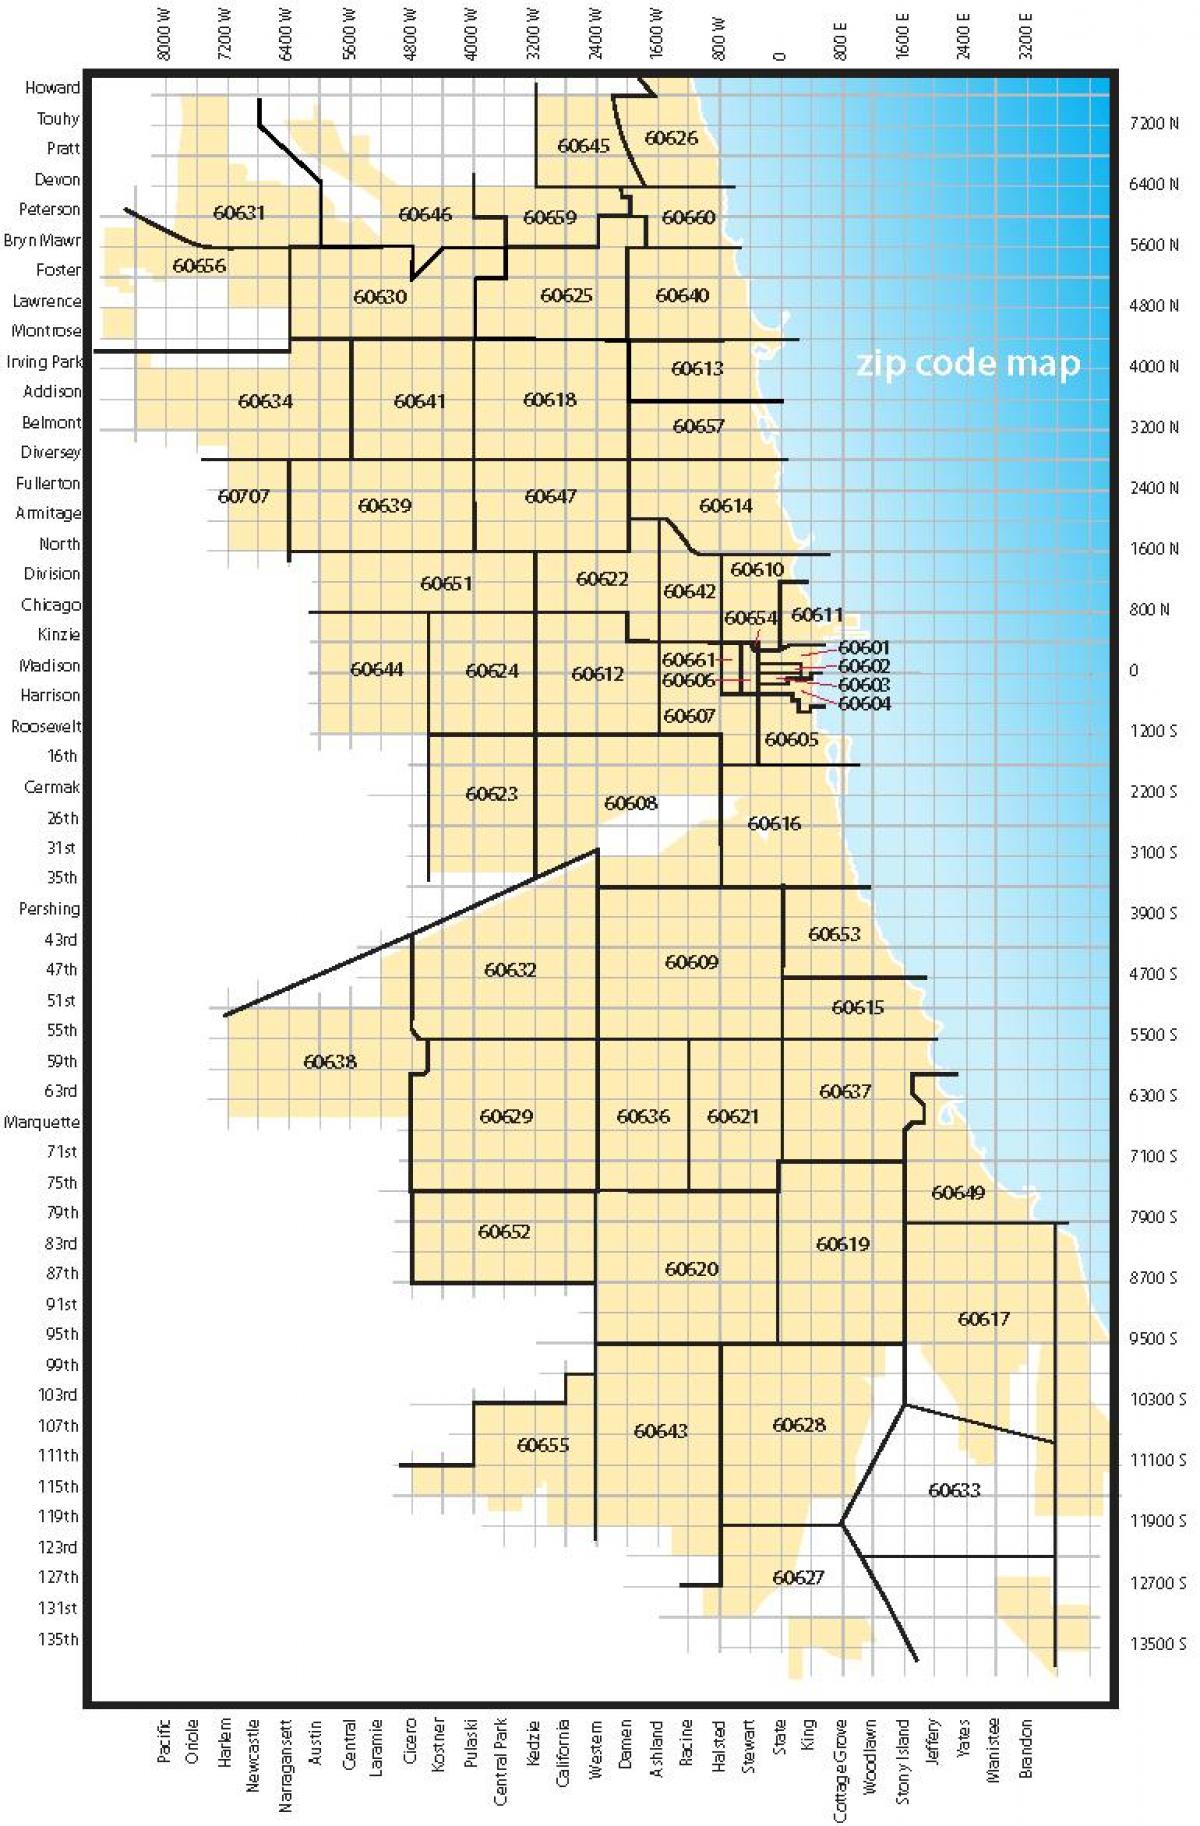 Chicago area code kort